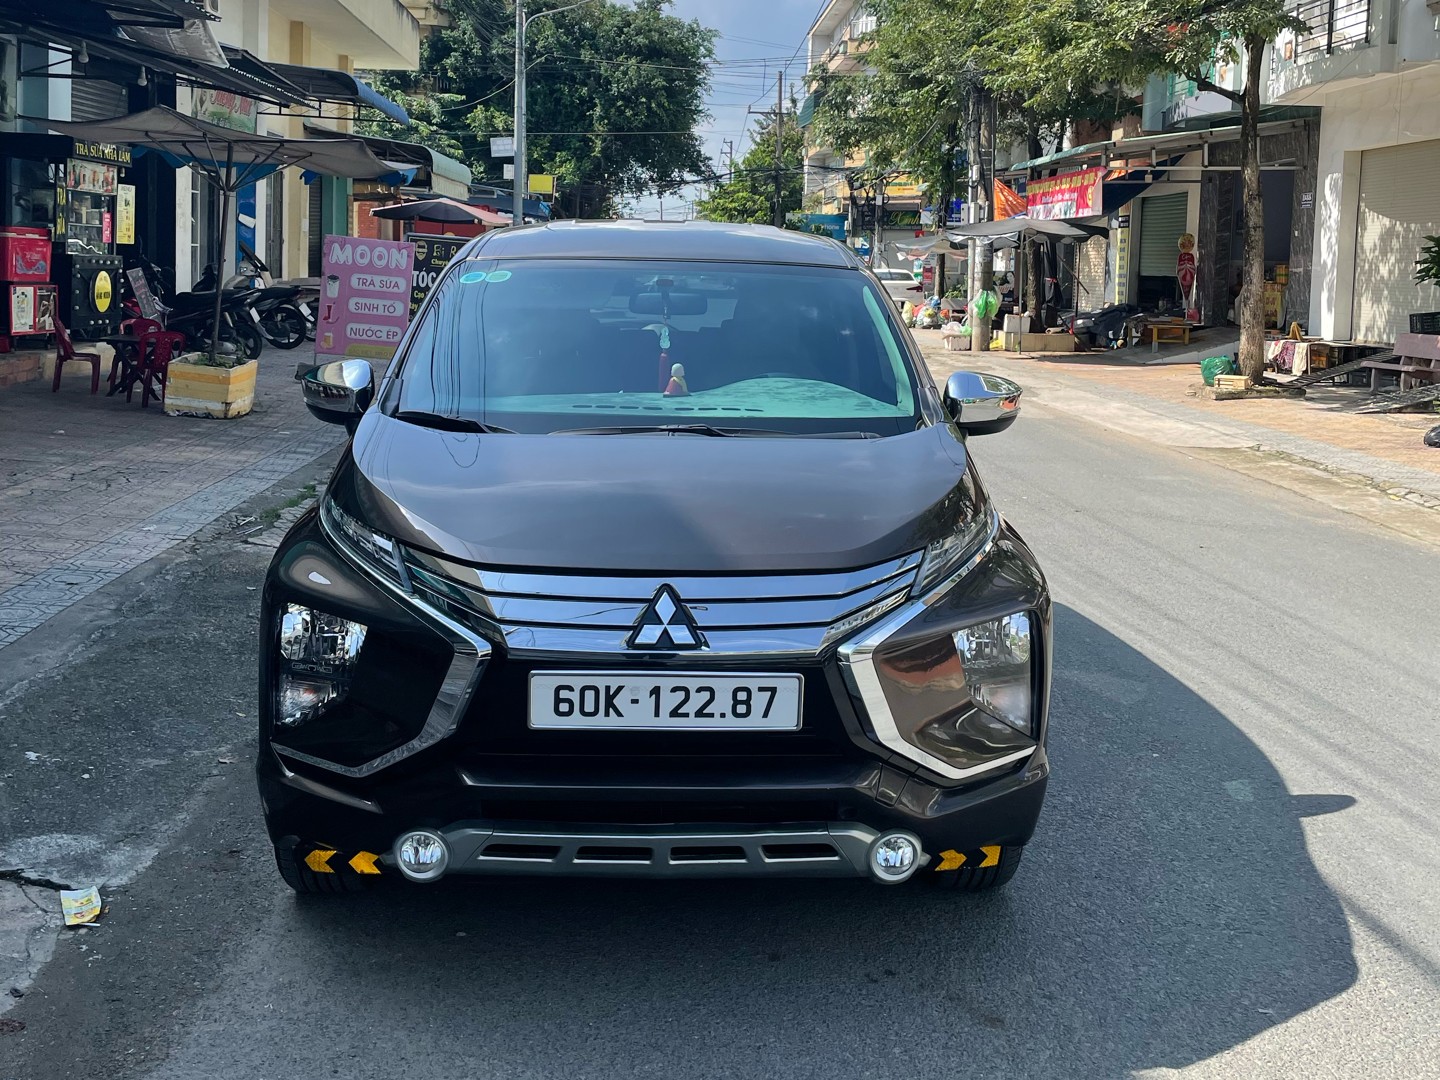 SigoVN - Cho thuê xe tự lái Đồng Nai - Xpander